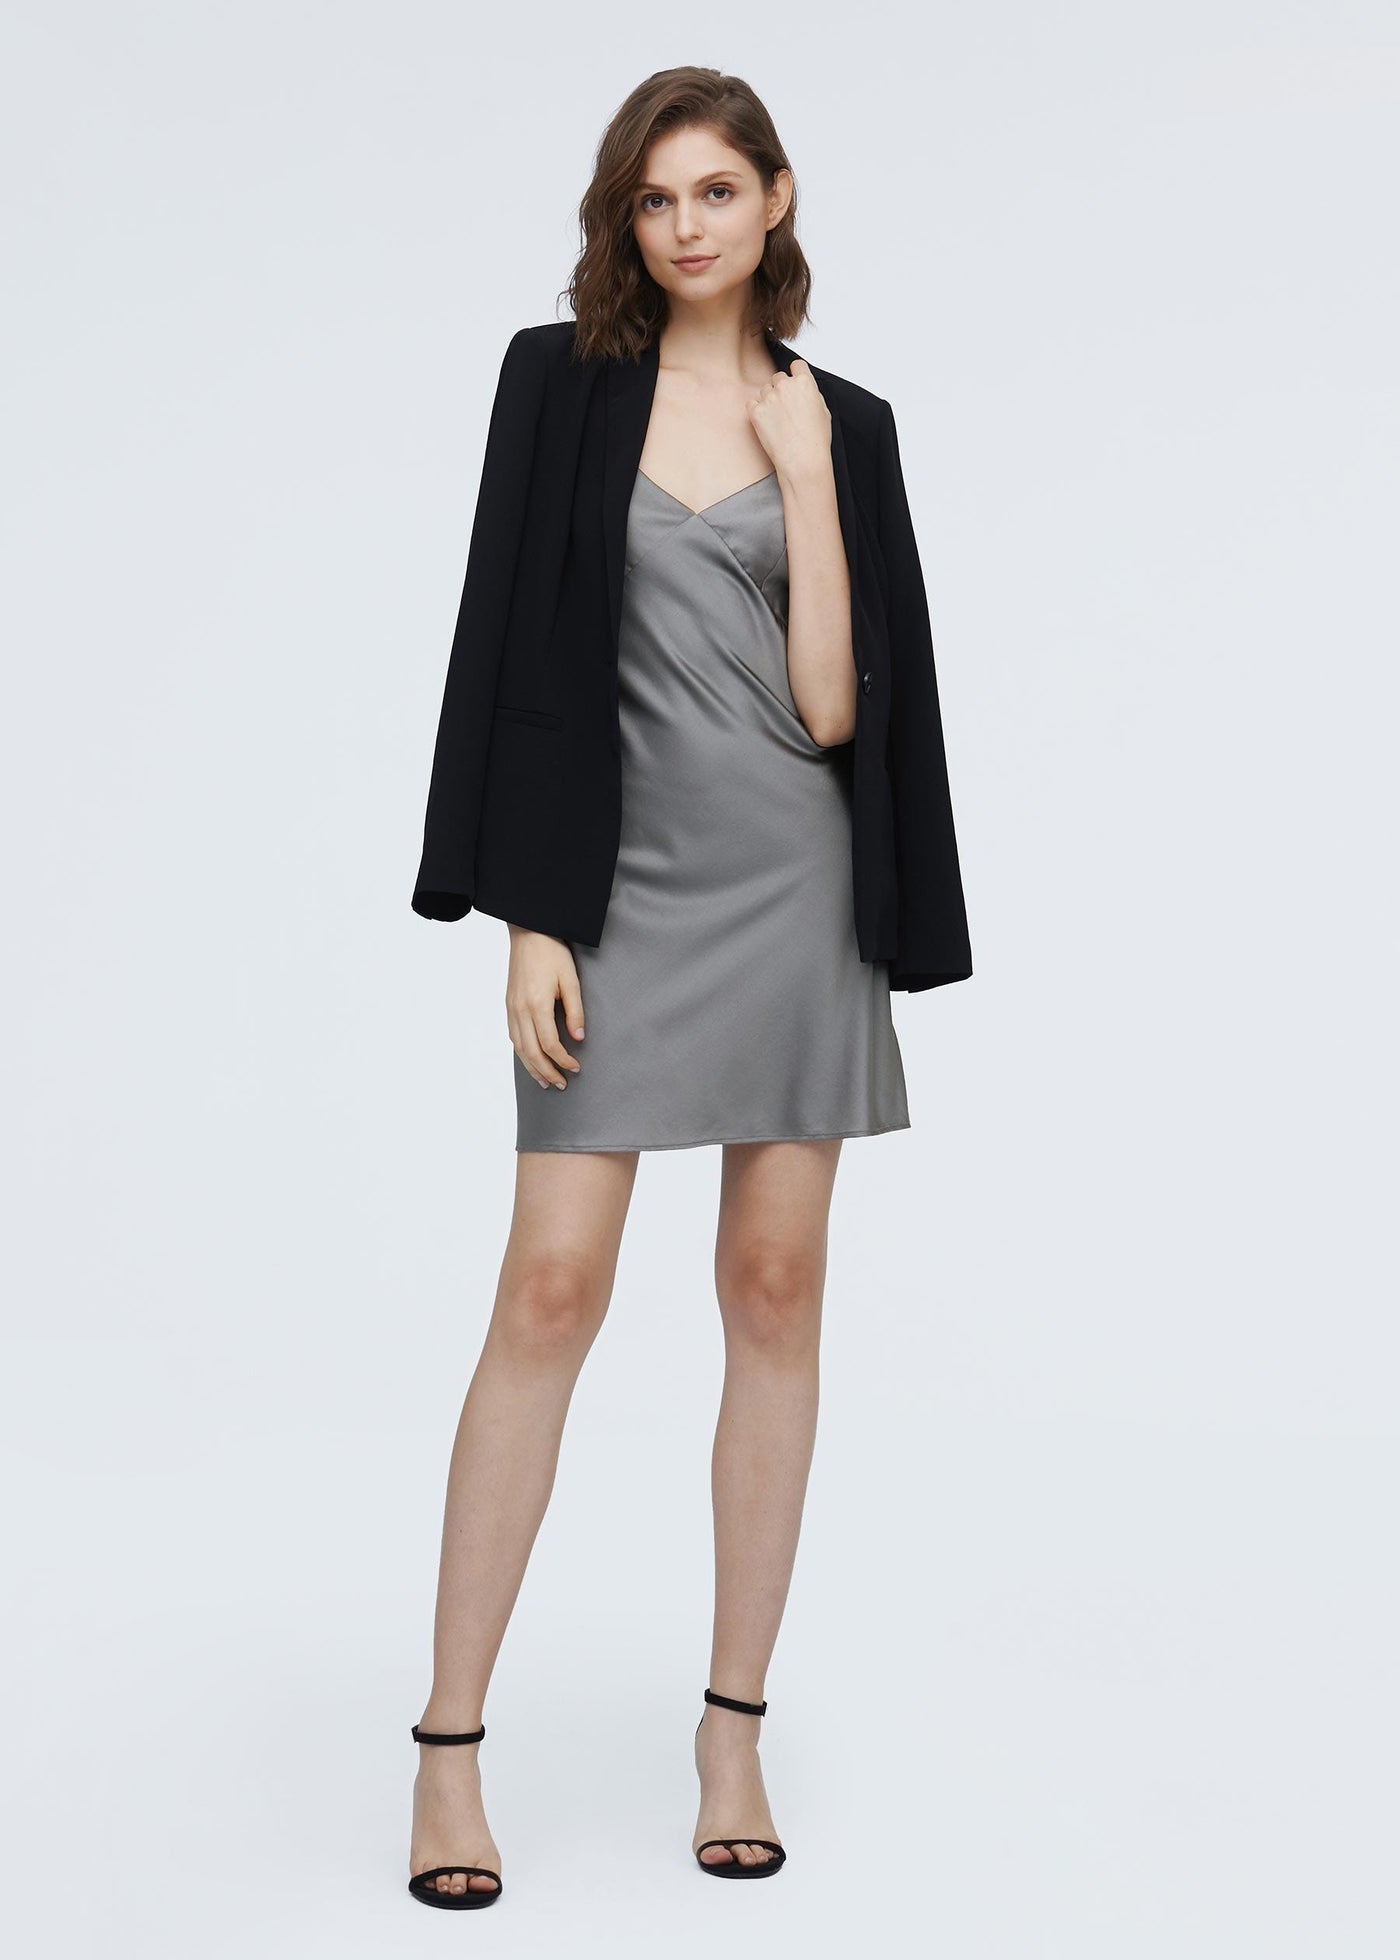 Elegant Summer Silk Slip Dress Dark Gray M LILYSILK Factory